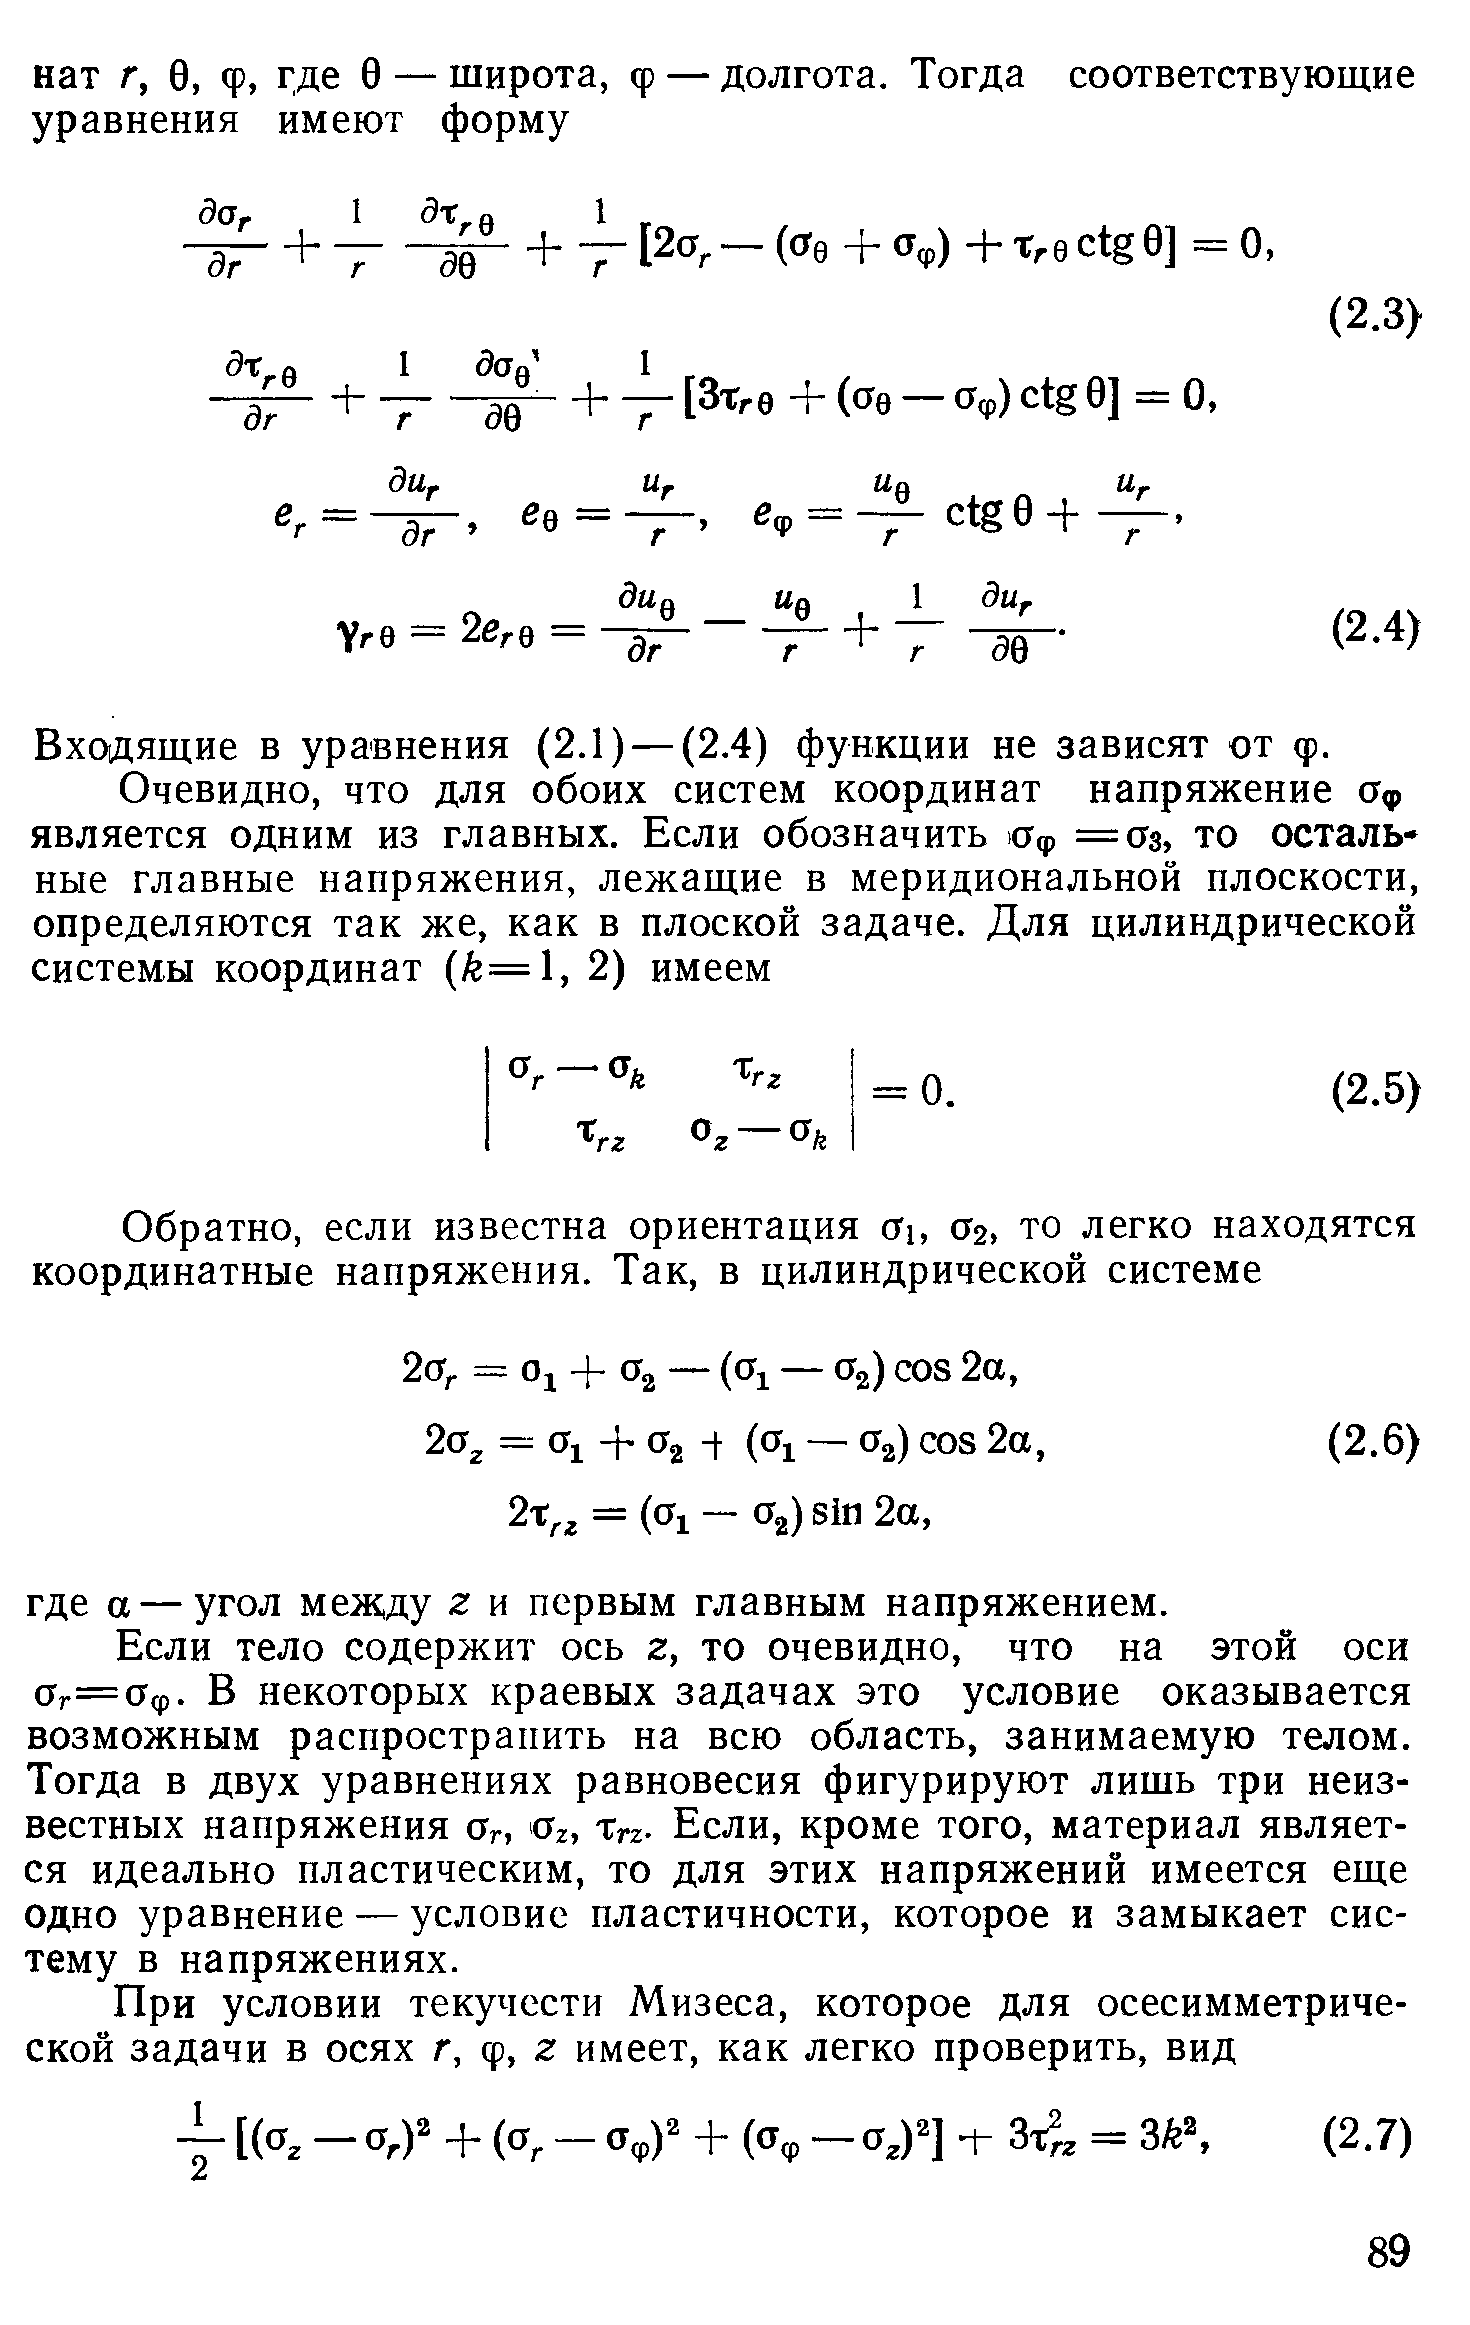 Входяш ие в уравнения (2.1) —(2.4) функции не зависят от ф.
